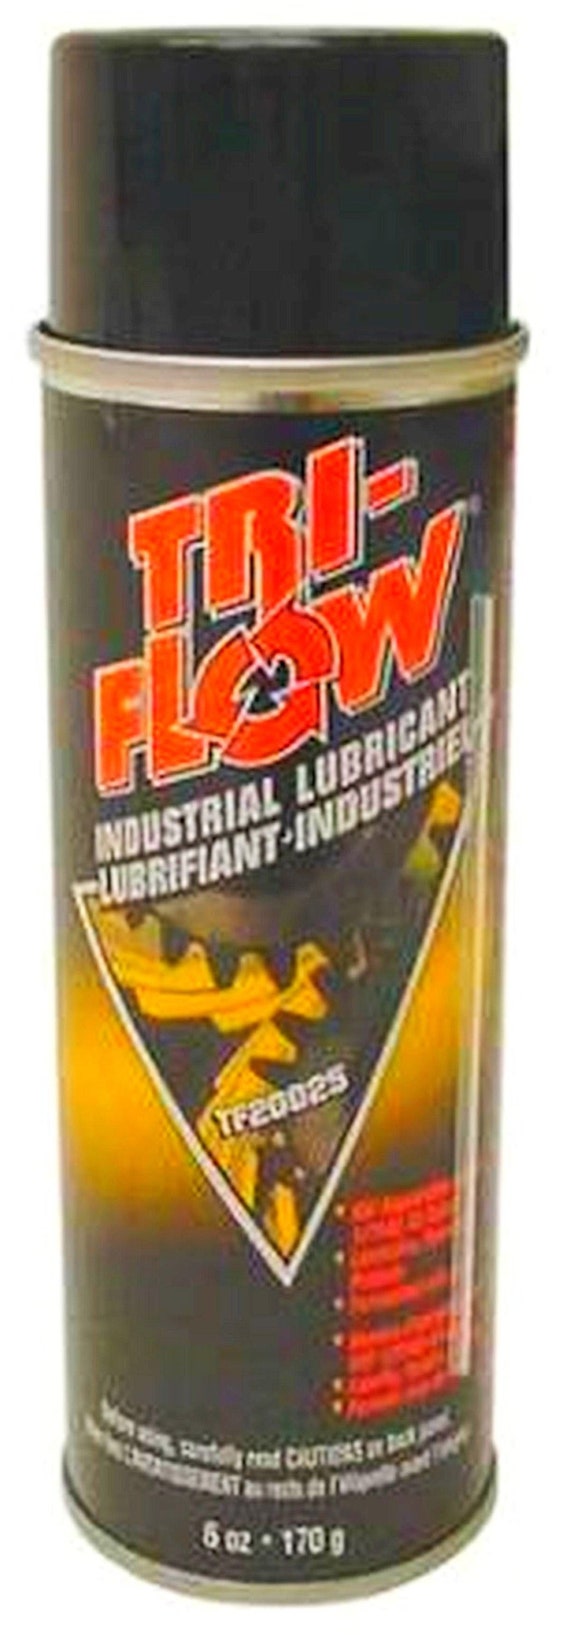 Triflow Superior Lubricant Aerosol - 6 oz spray